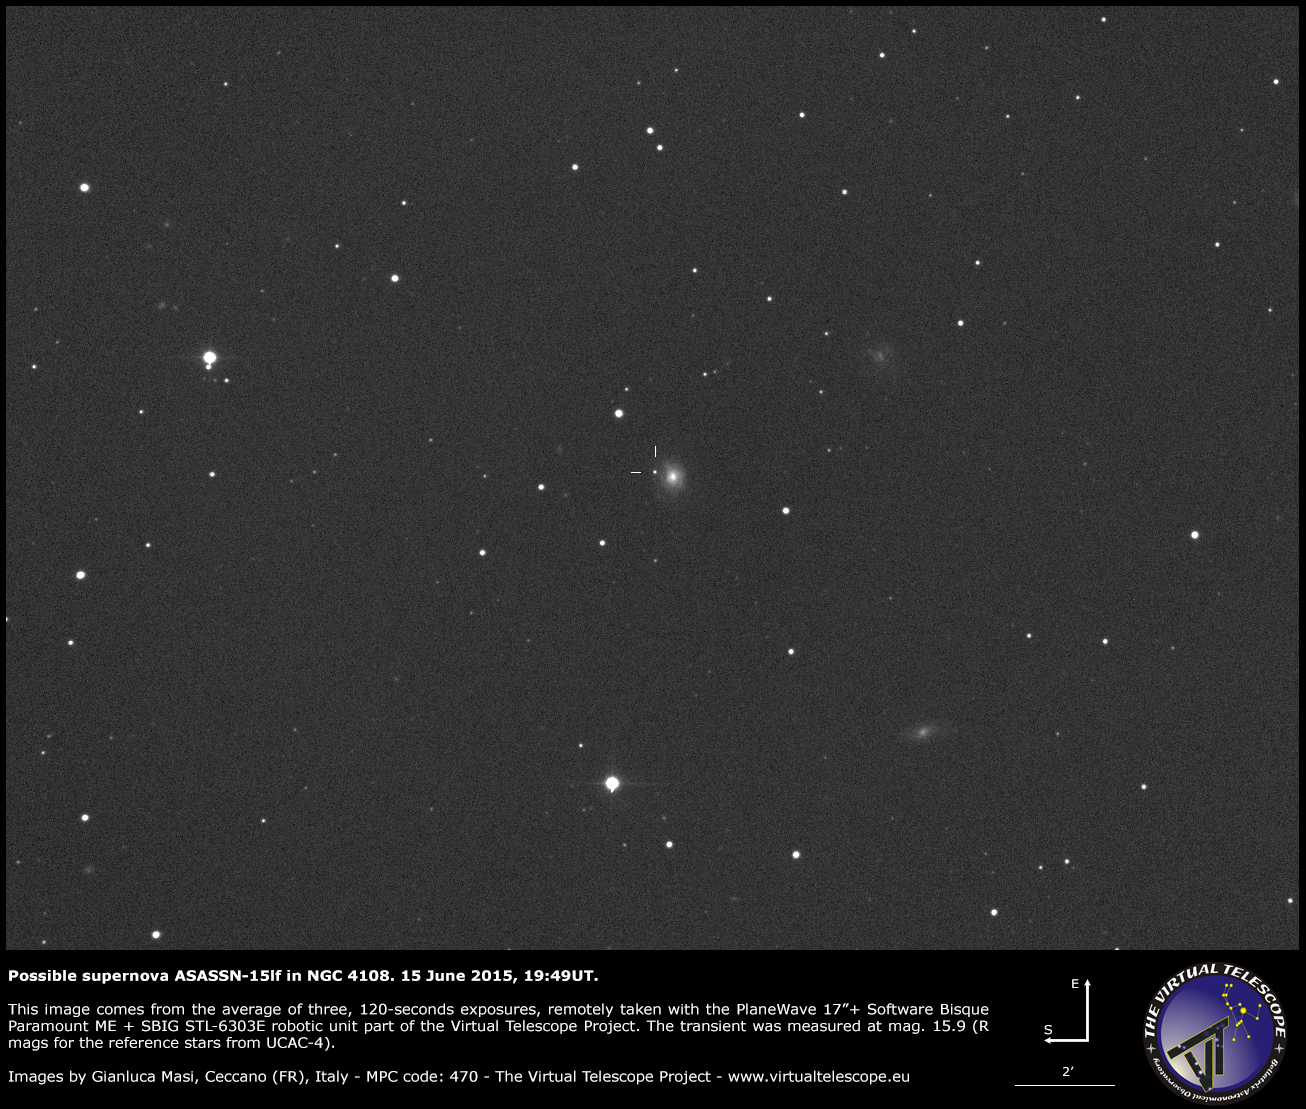 Scopri di più sull'articolo Supernova ASASSN-15lf in NGC 4108: un’immagine (15 giugno 2015)